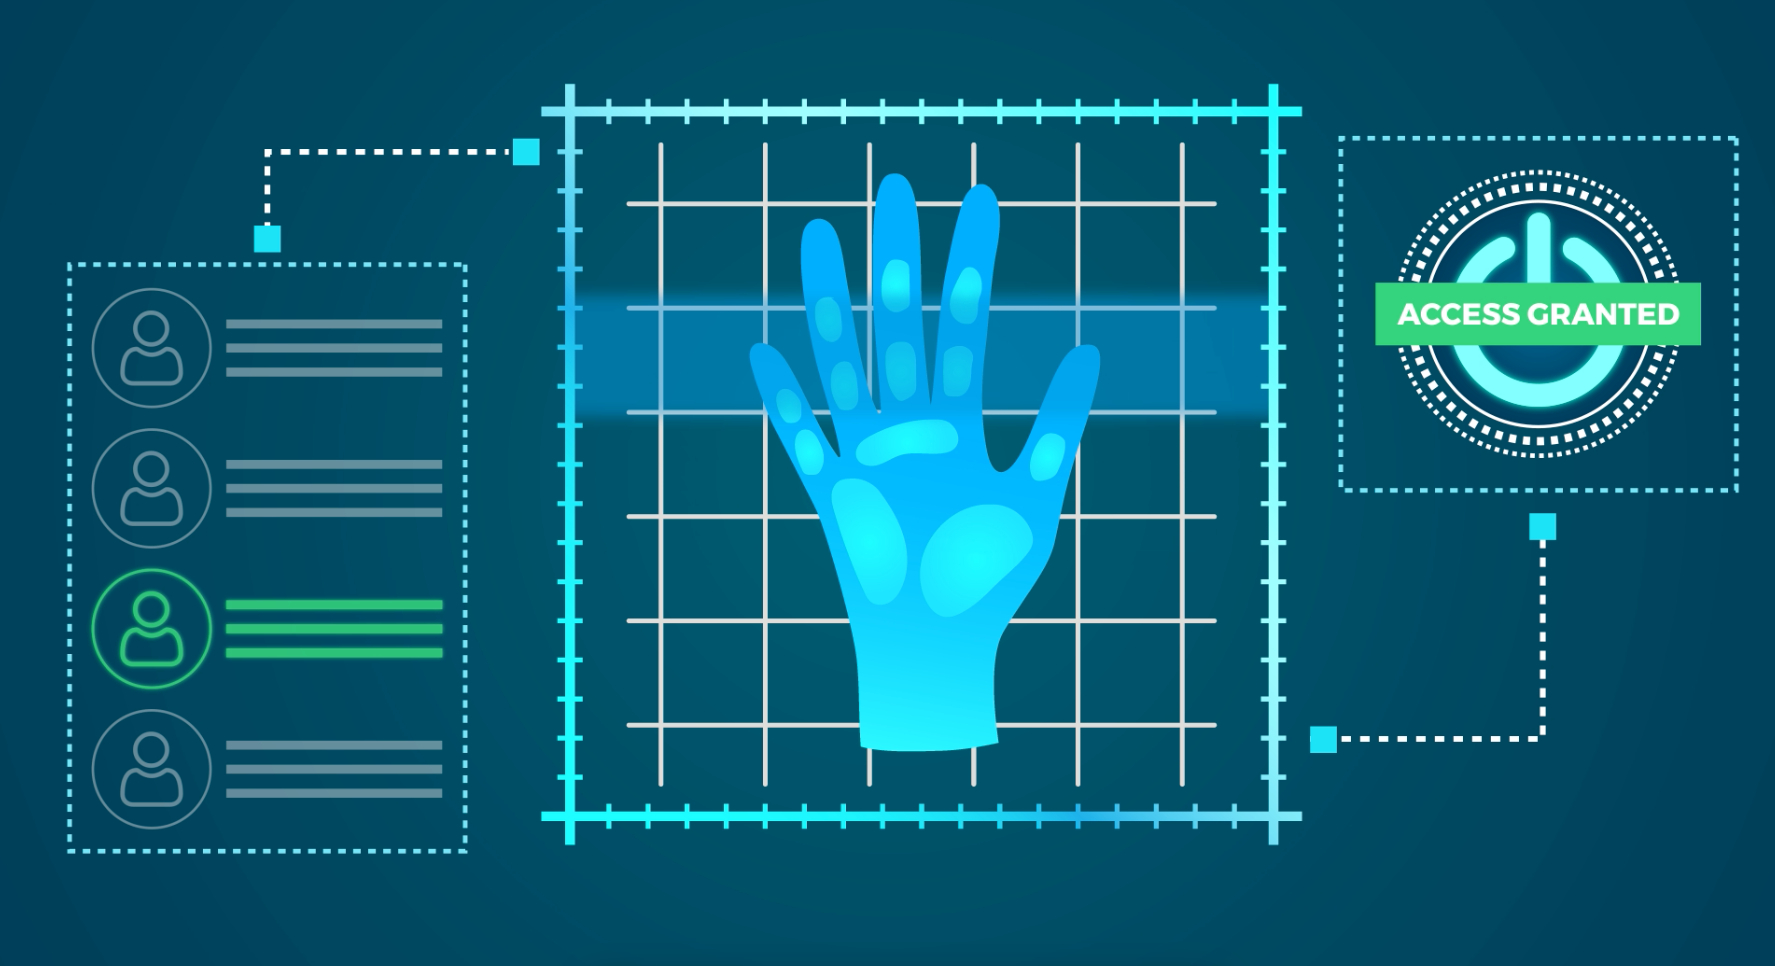 Nowy sposób na bezkontaktową biometrię za pomocą dłoni: Verihand